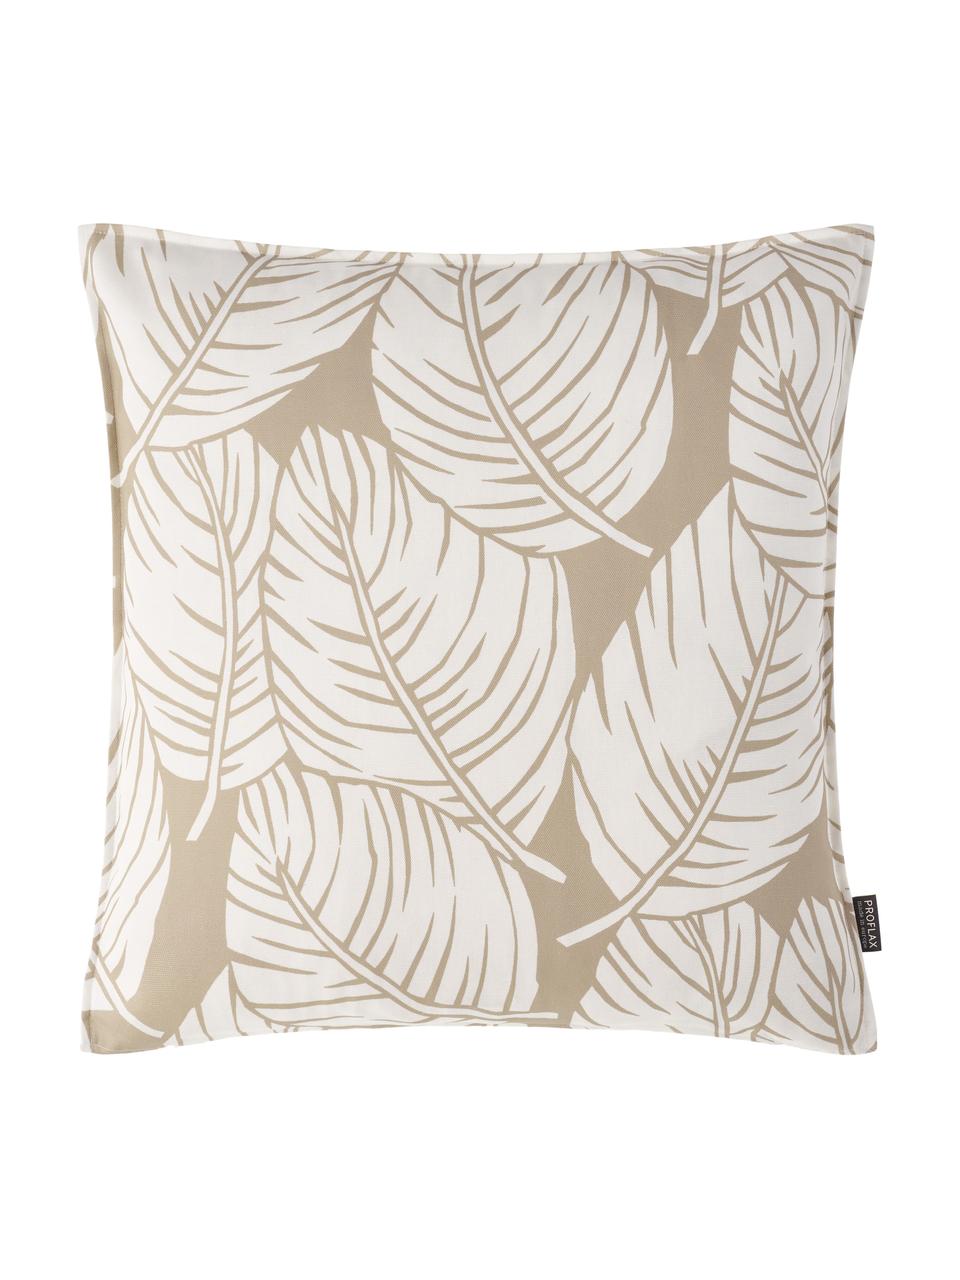 Kissenhülle Raul mit Blättermotiven, 100% Baumwolle, Sandfarben, gebrochenes Weiß, 40 x 40 cm